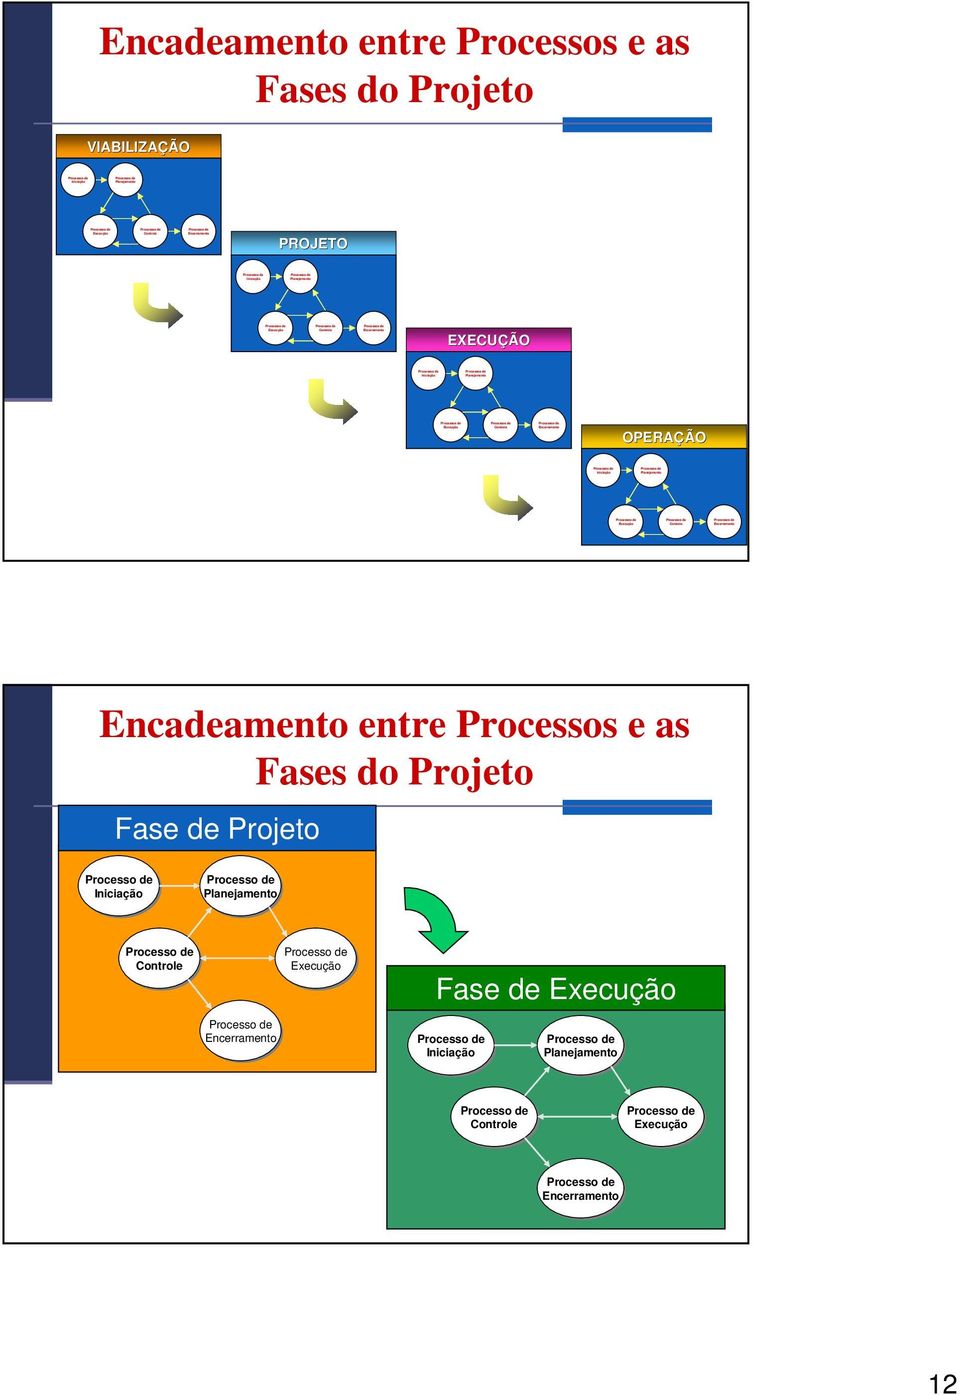 Encadeamento entre Processos e as Fases do Fase de Processo de Iniciação Processo de Planejamento Processo de Controle Processo de Encerramento